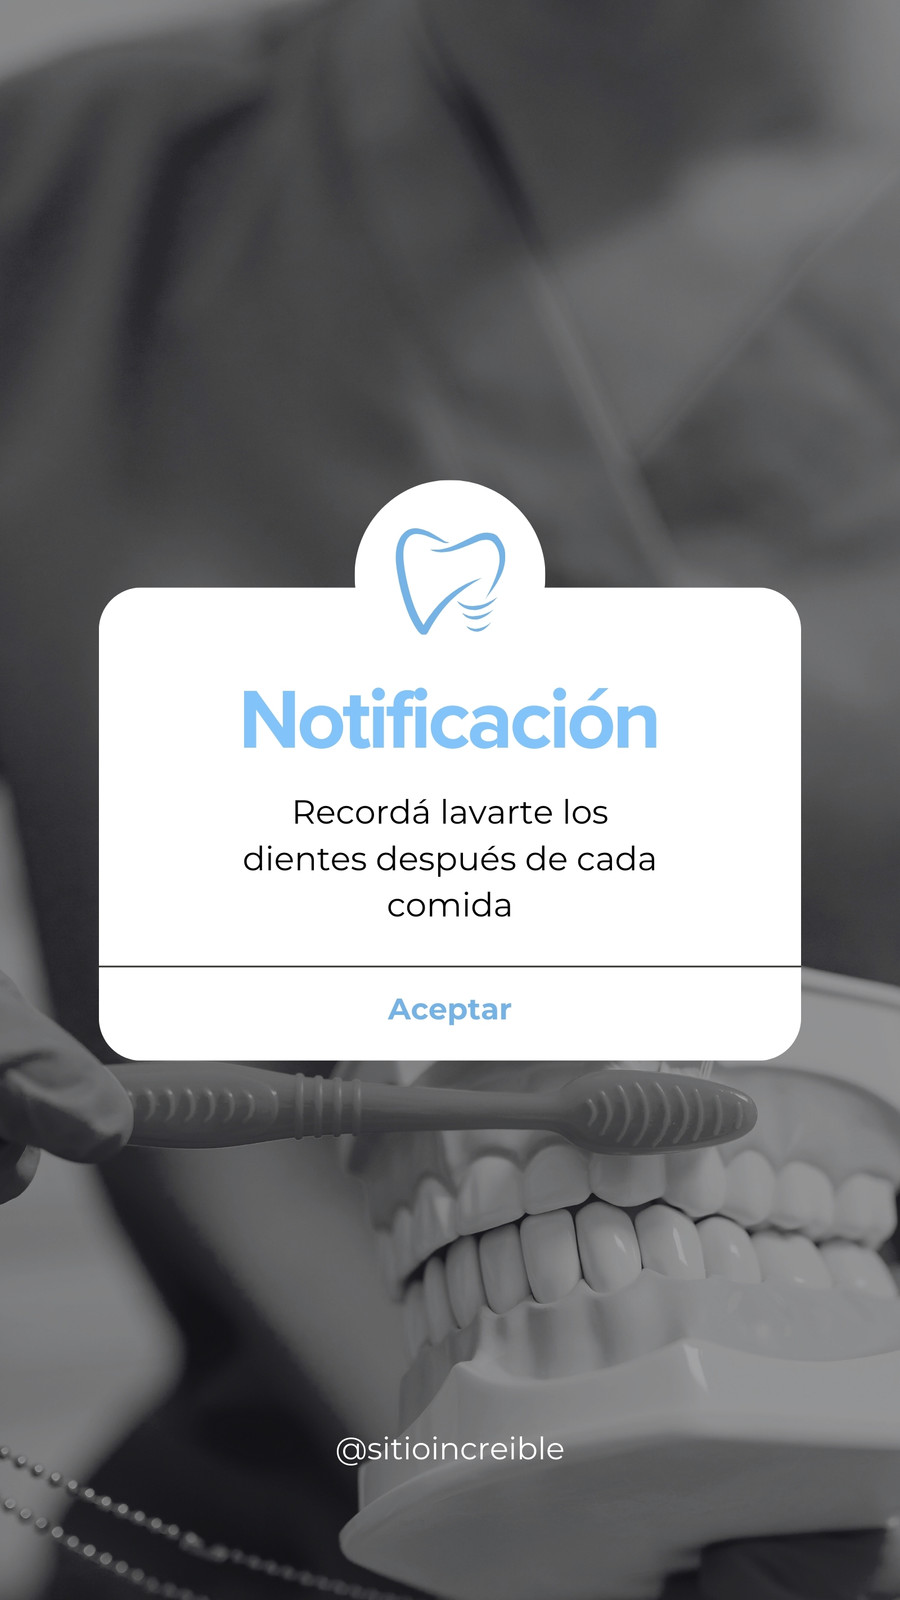 Historia para Instagram Notificación Dentista Simple Celeste